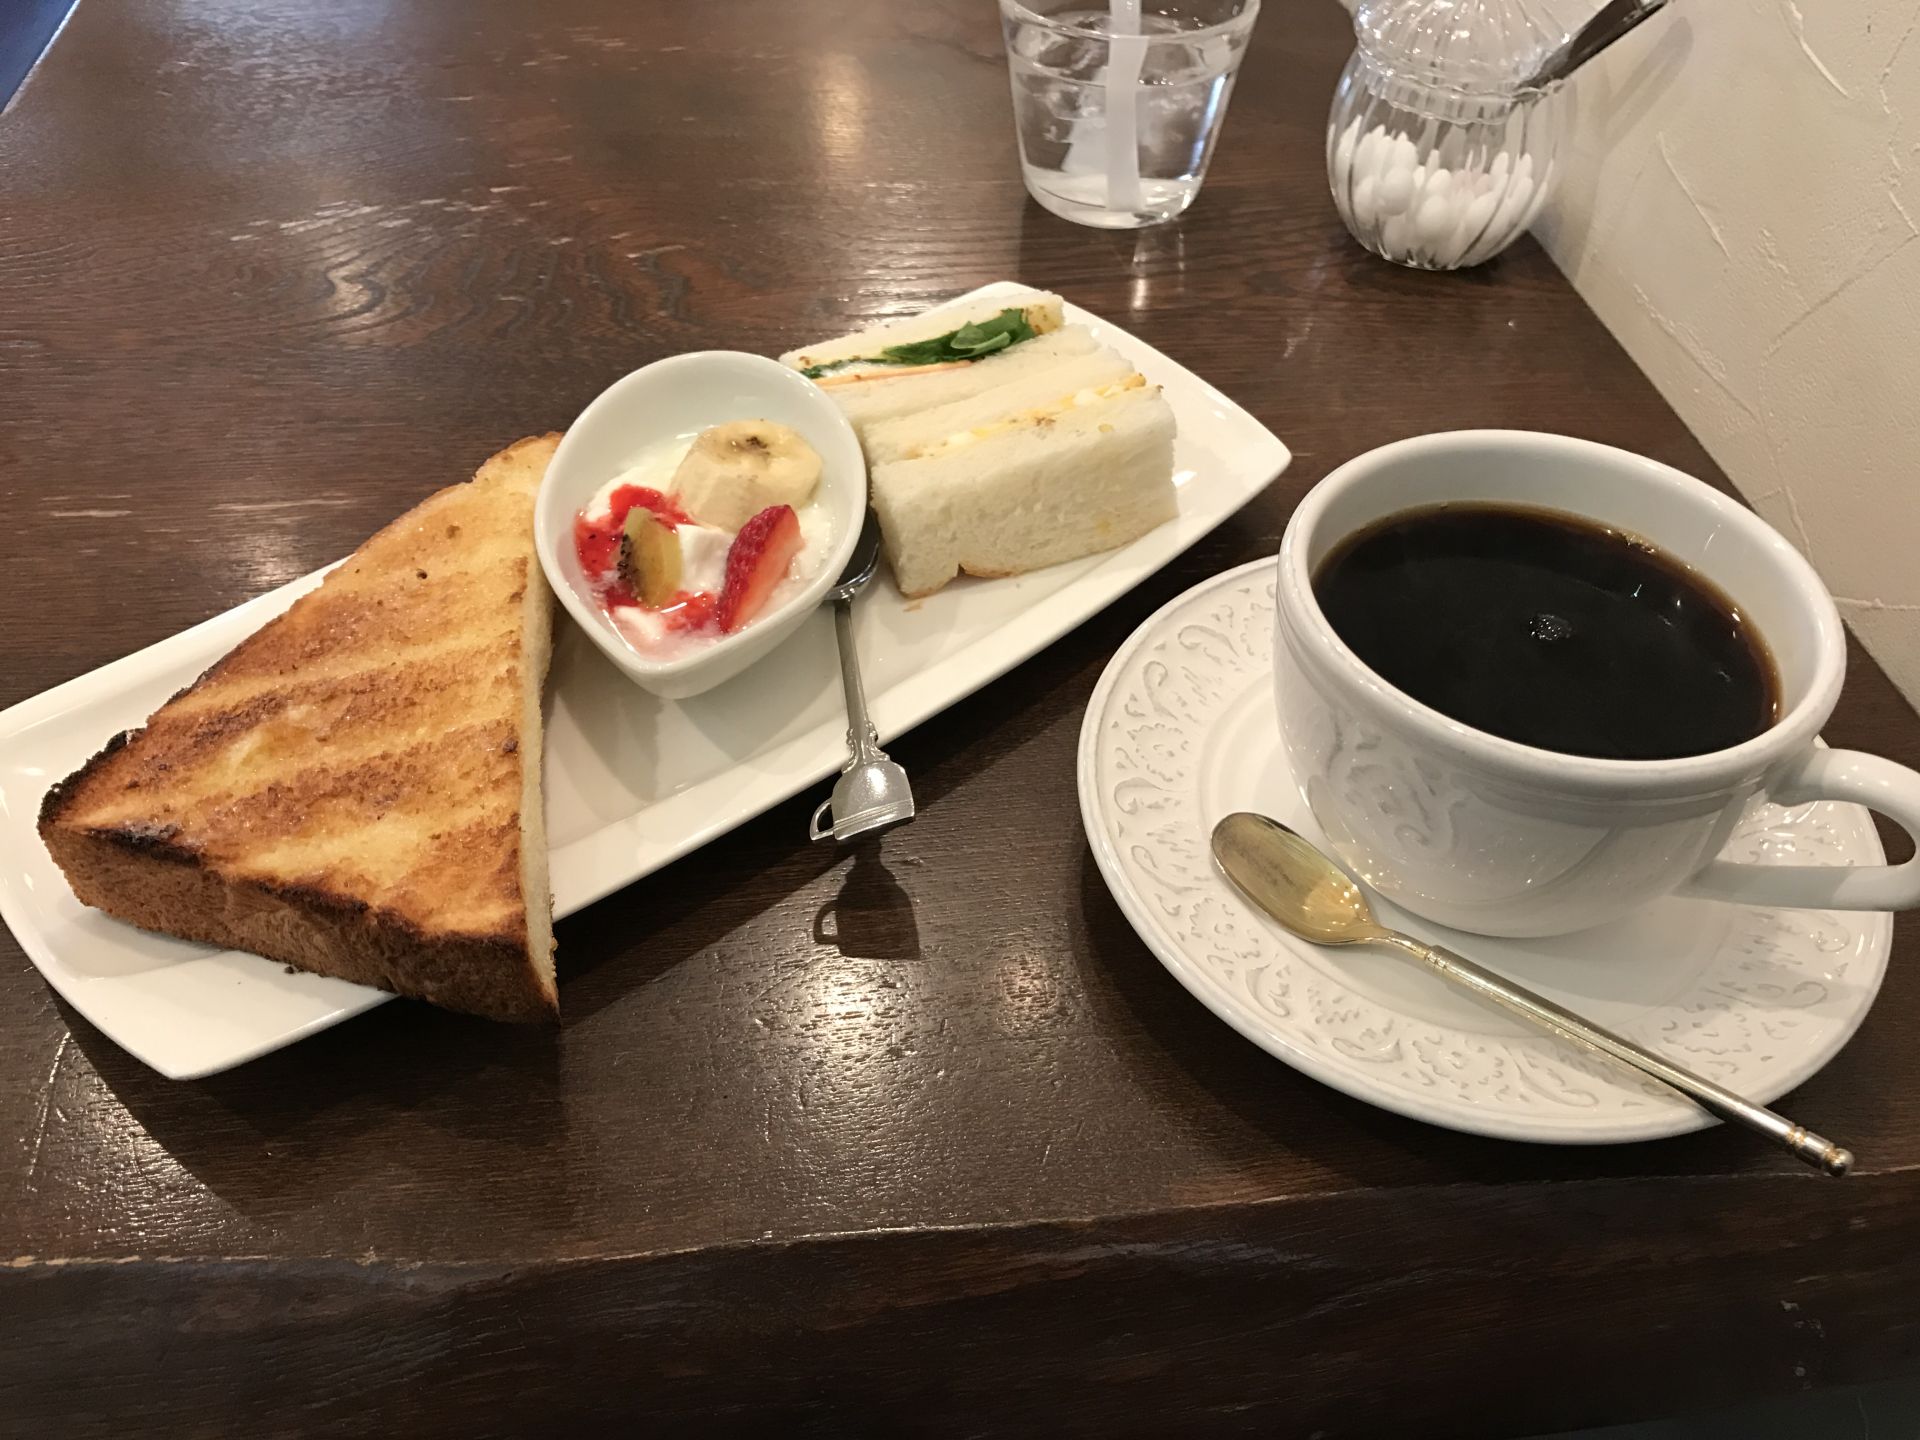 人気店 カフェ ド リオン のモーニング 名古屋のカフェは噂通りサービス精神旺盛だった Oh My ブログ